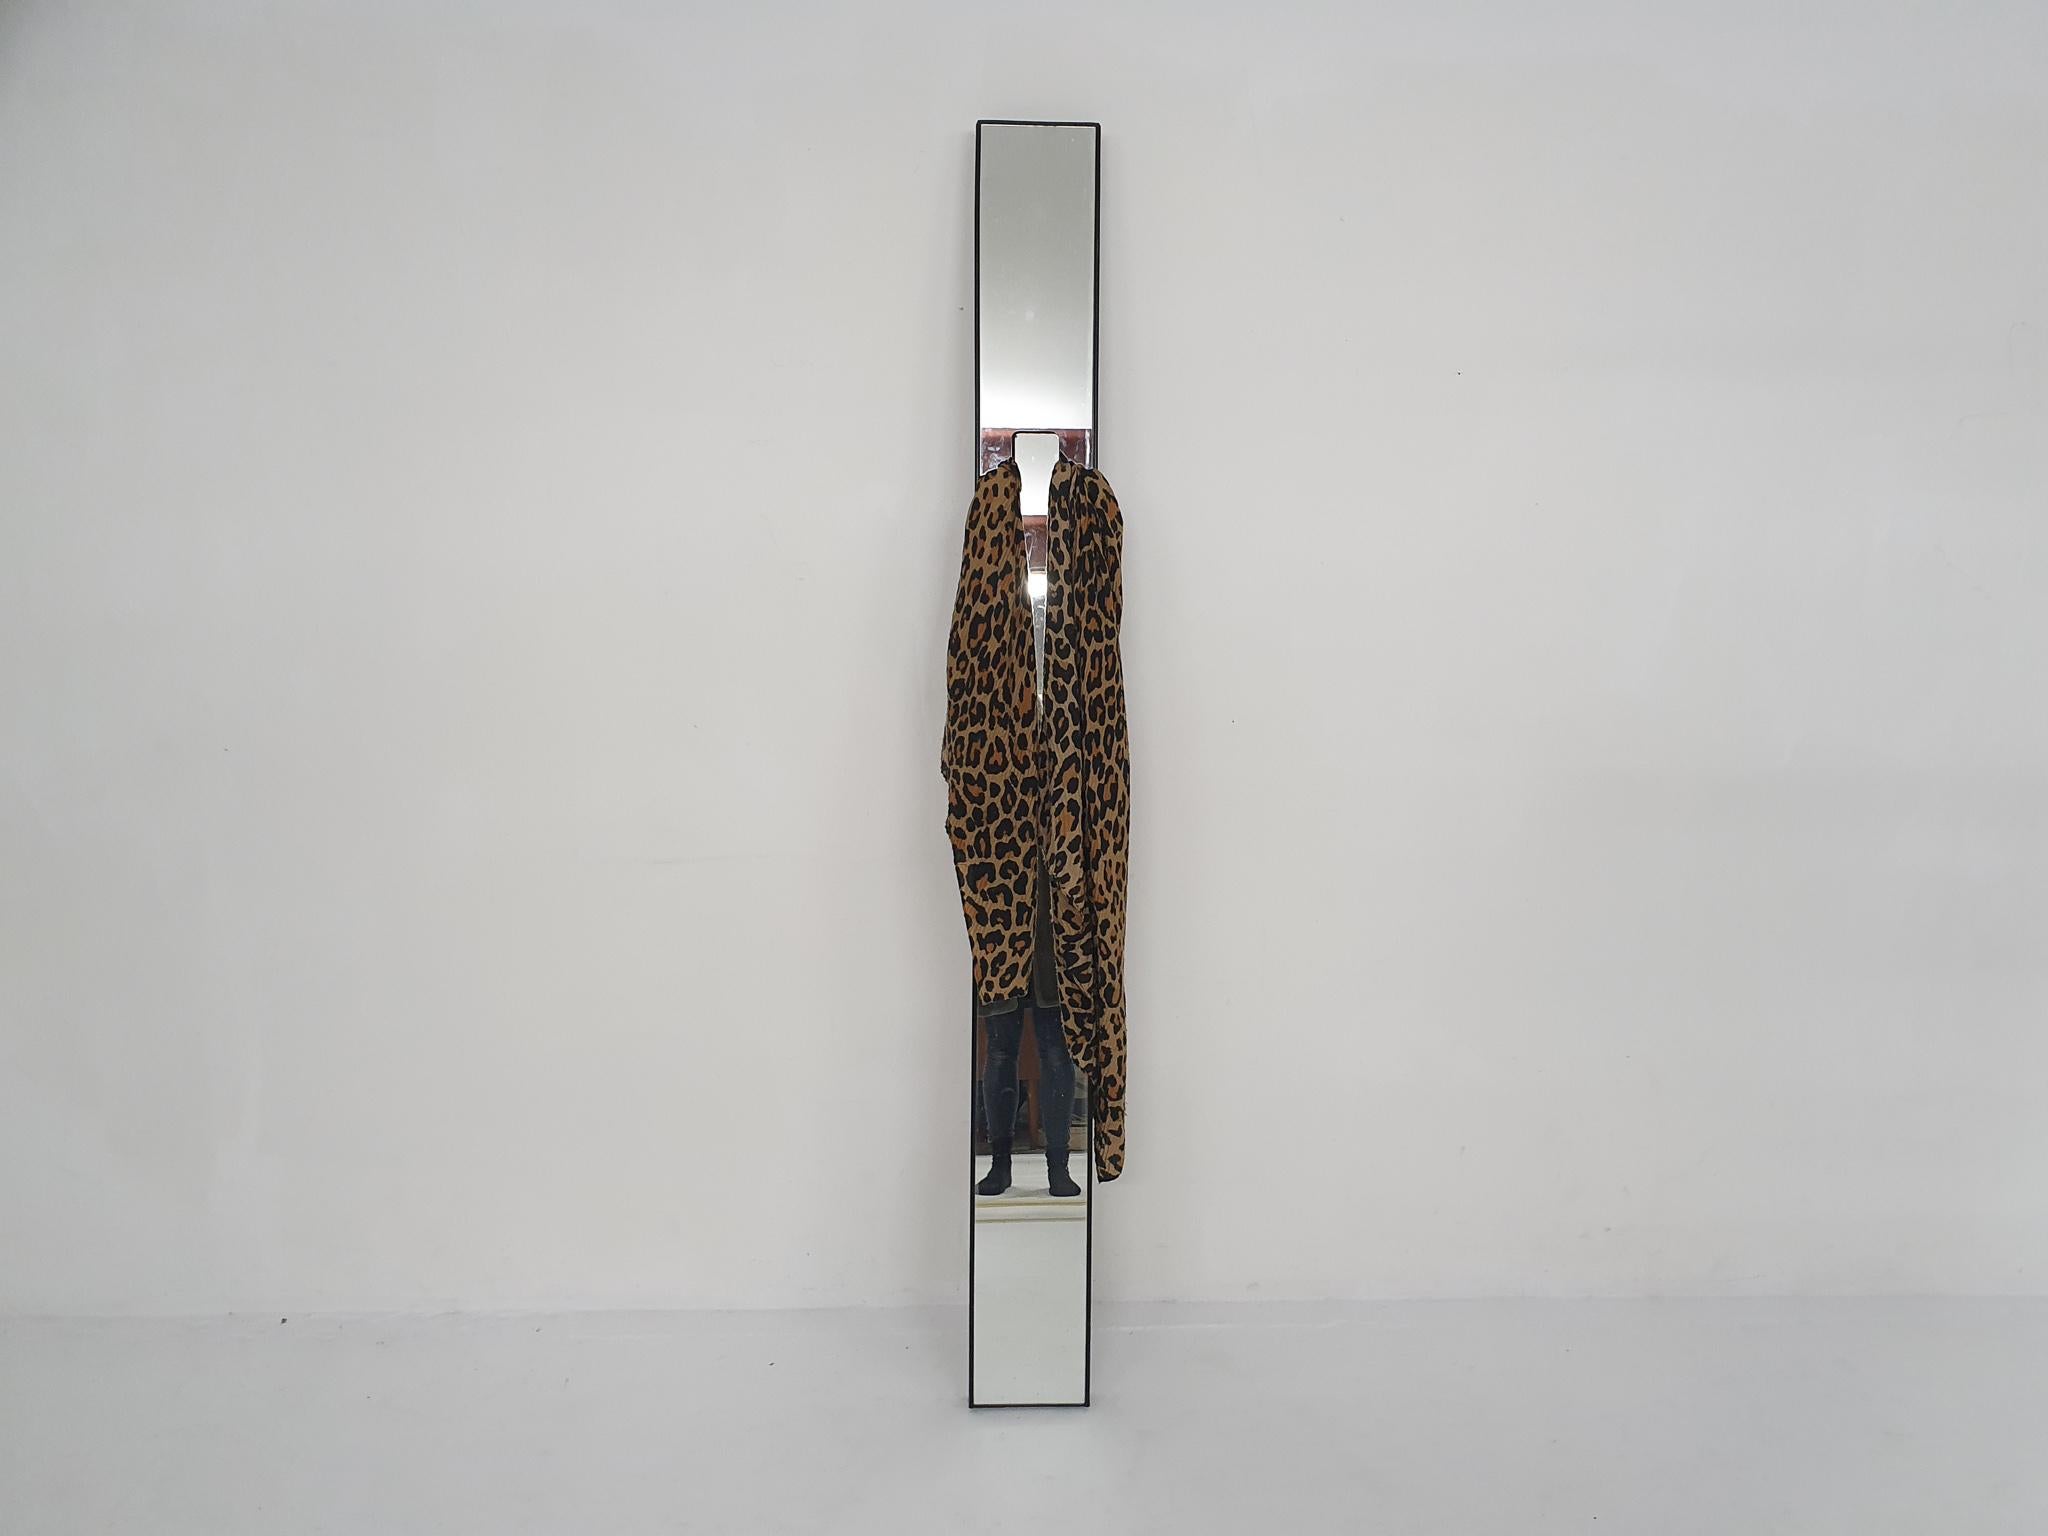 Plastic Italian design mirror by Luciano Bertoncini, 1980's